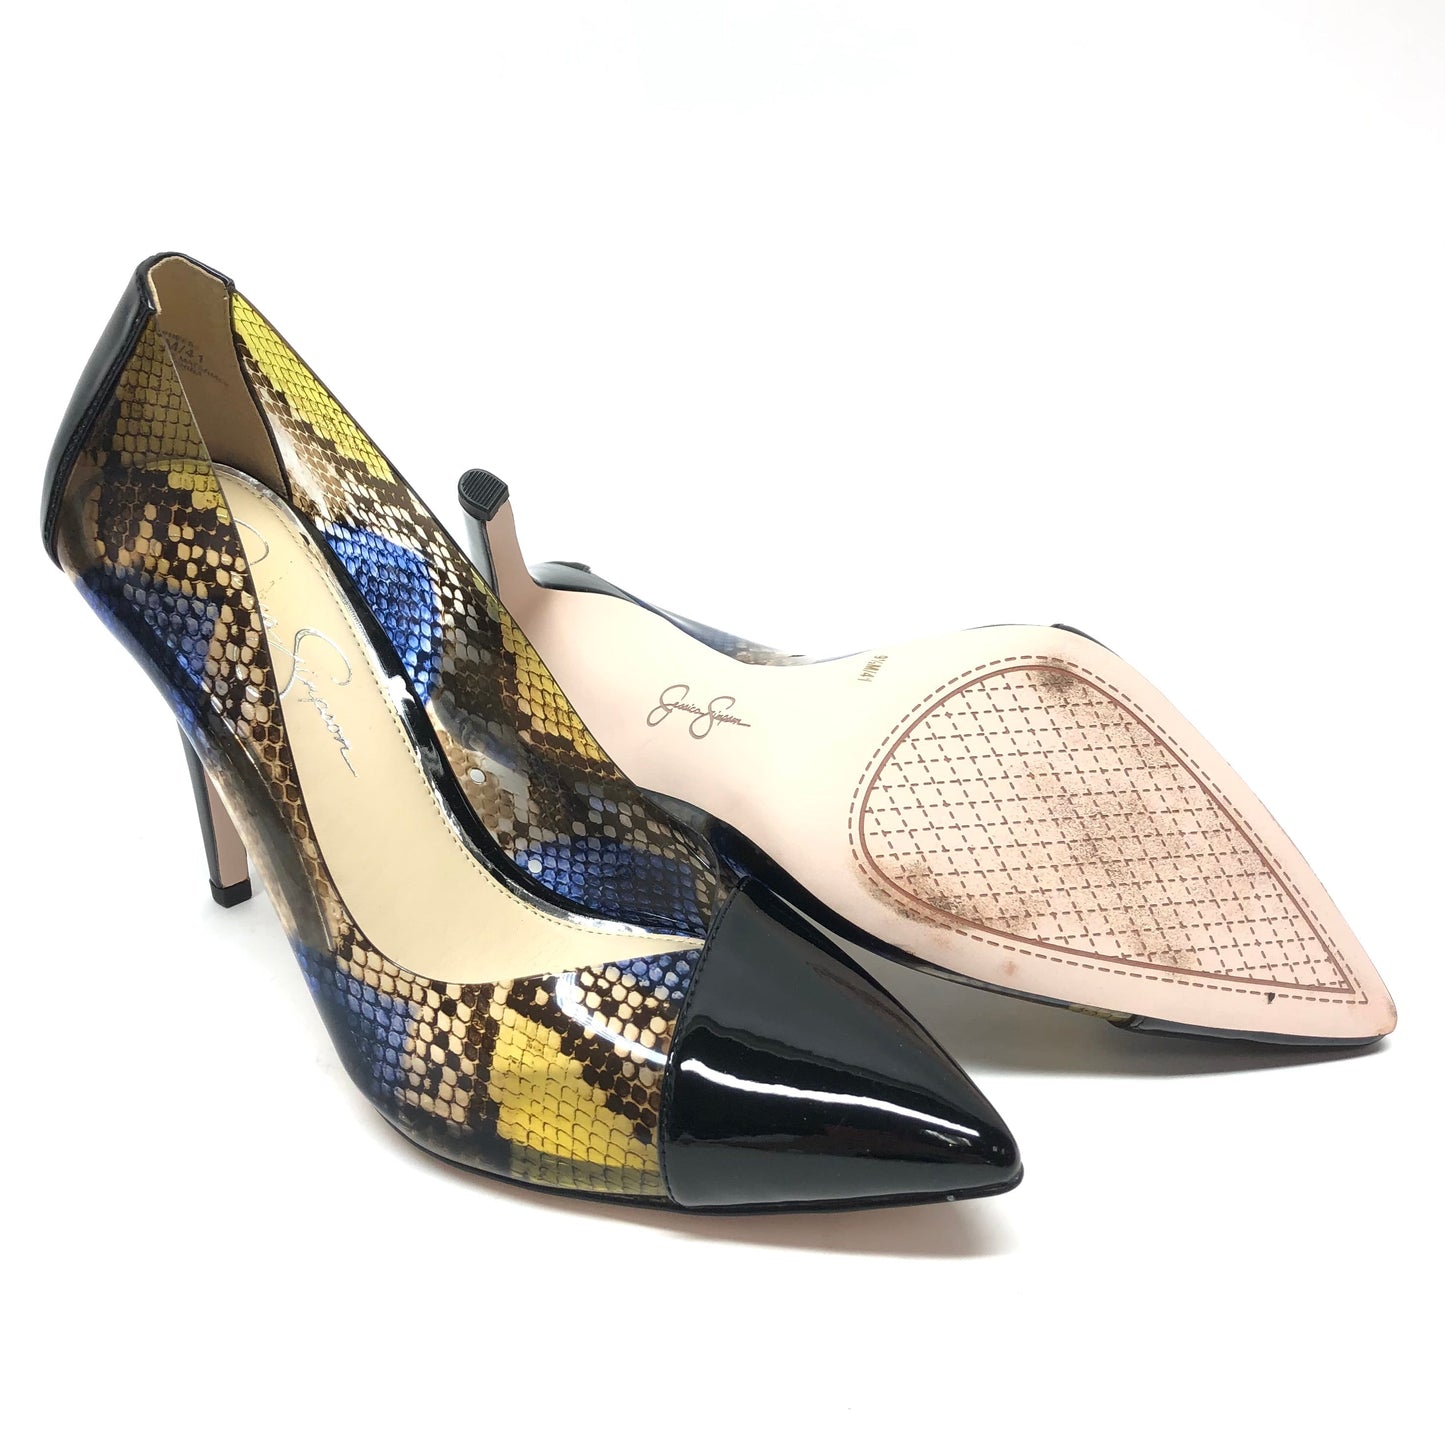 Black & Blue Shoes Heels Stiletto Jessica Simpson, Size 9.5